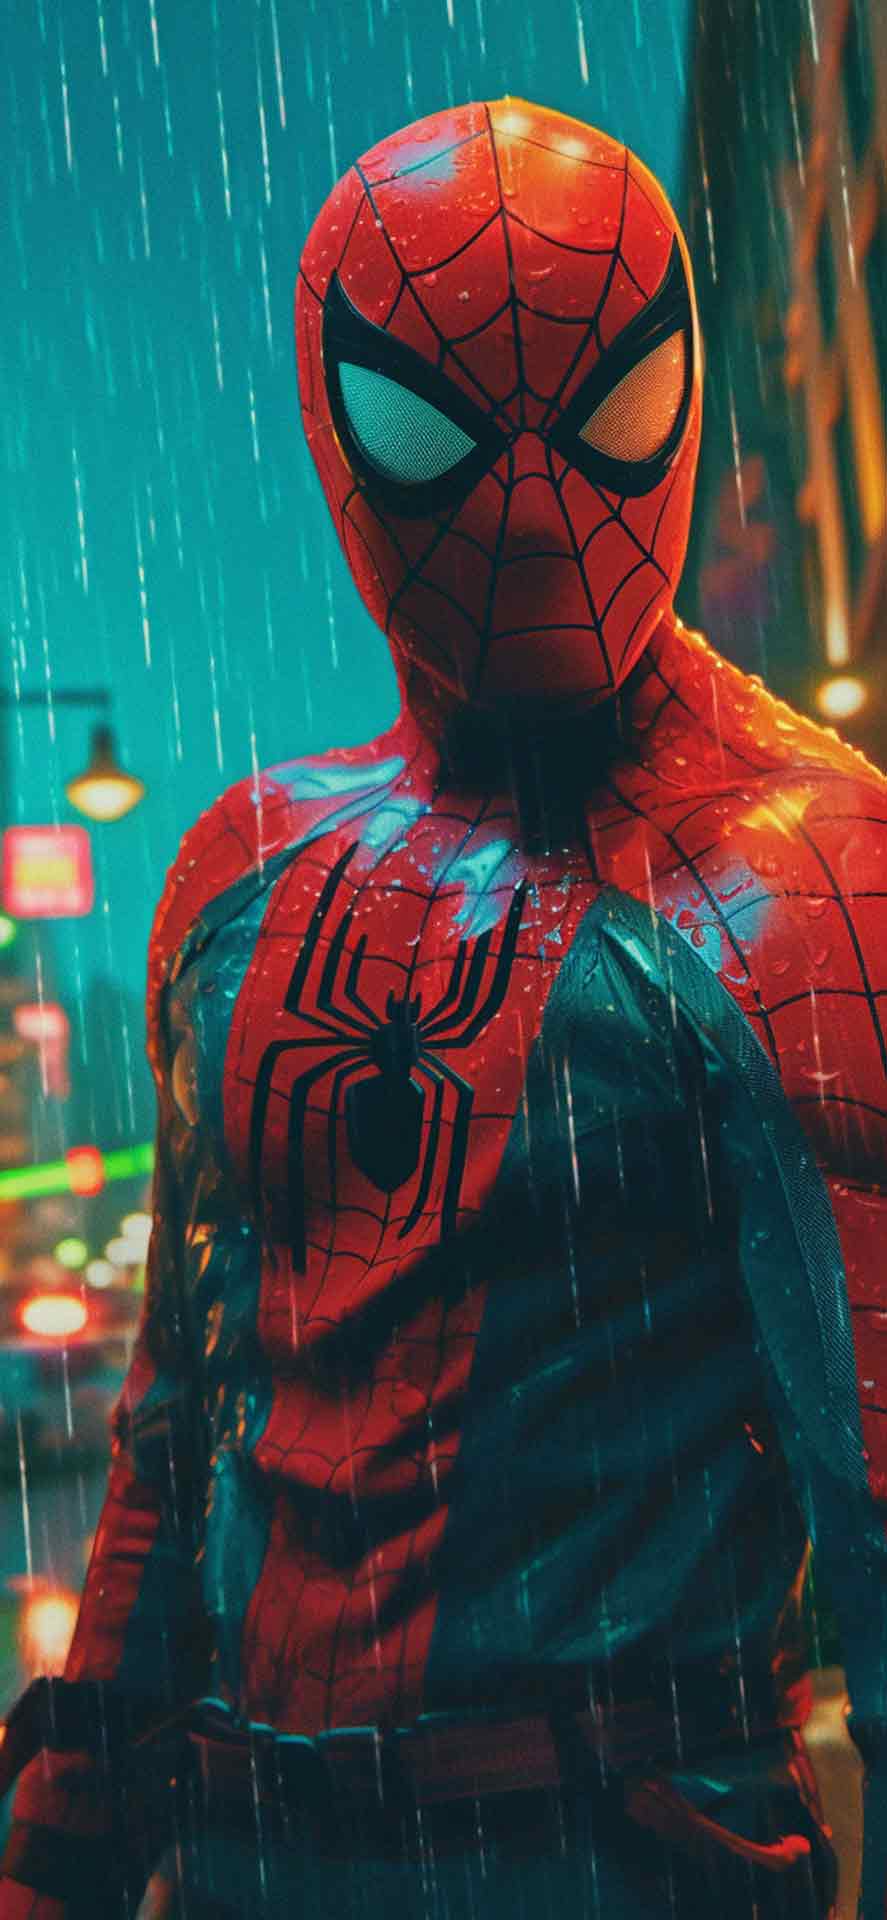 漫威蜘蛛侠在雨中壁纸